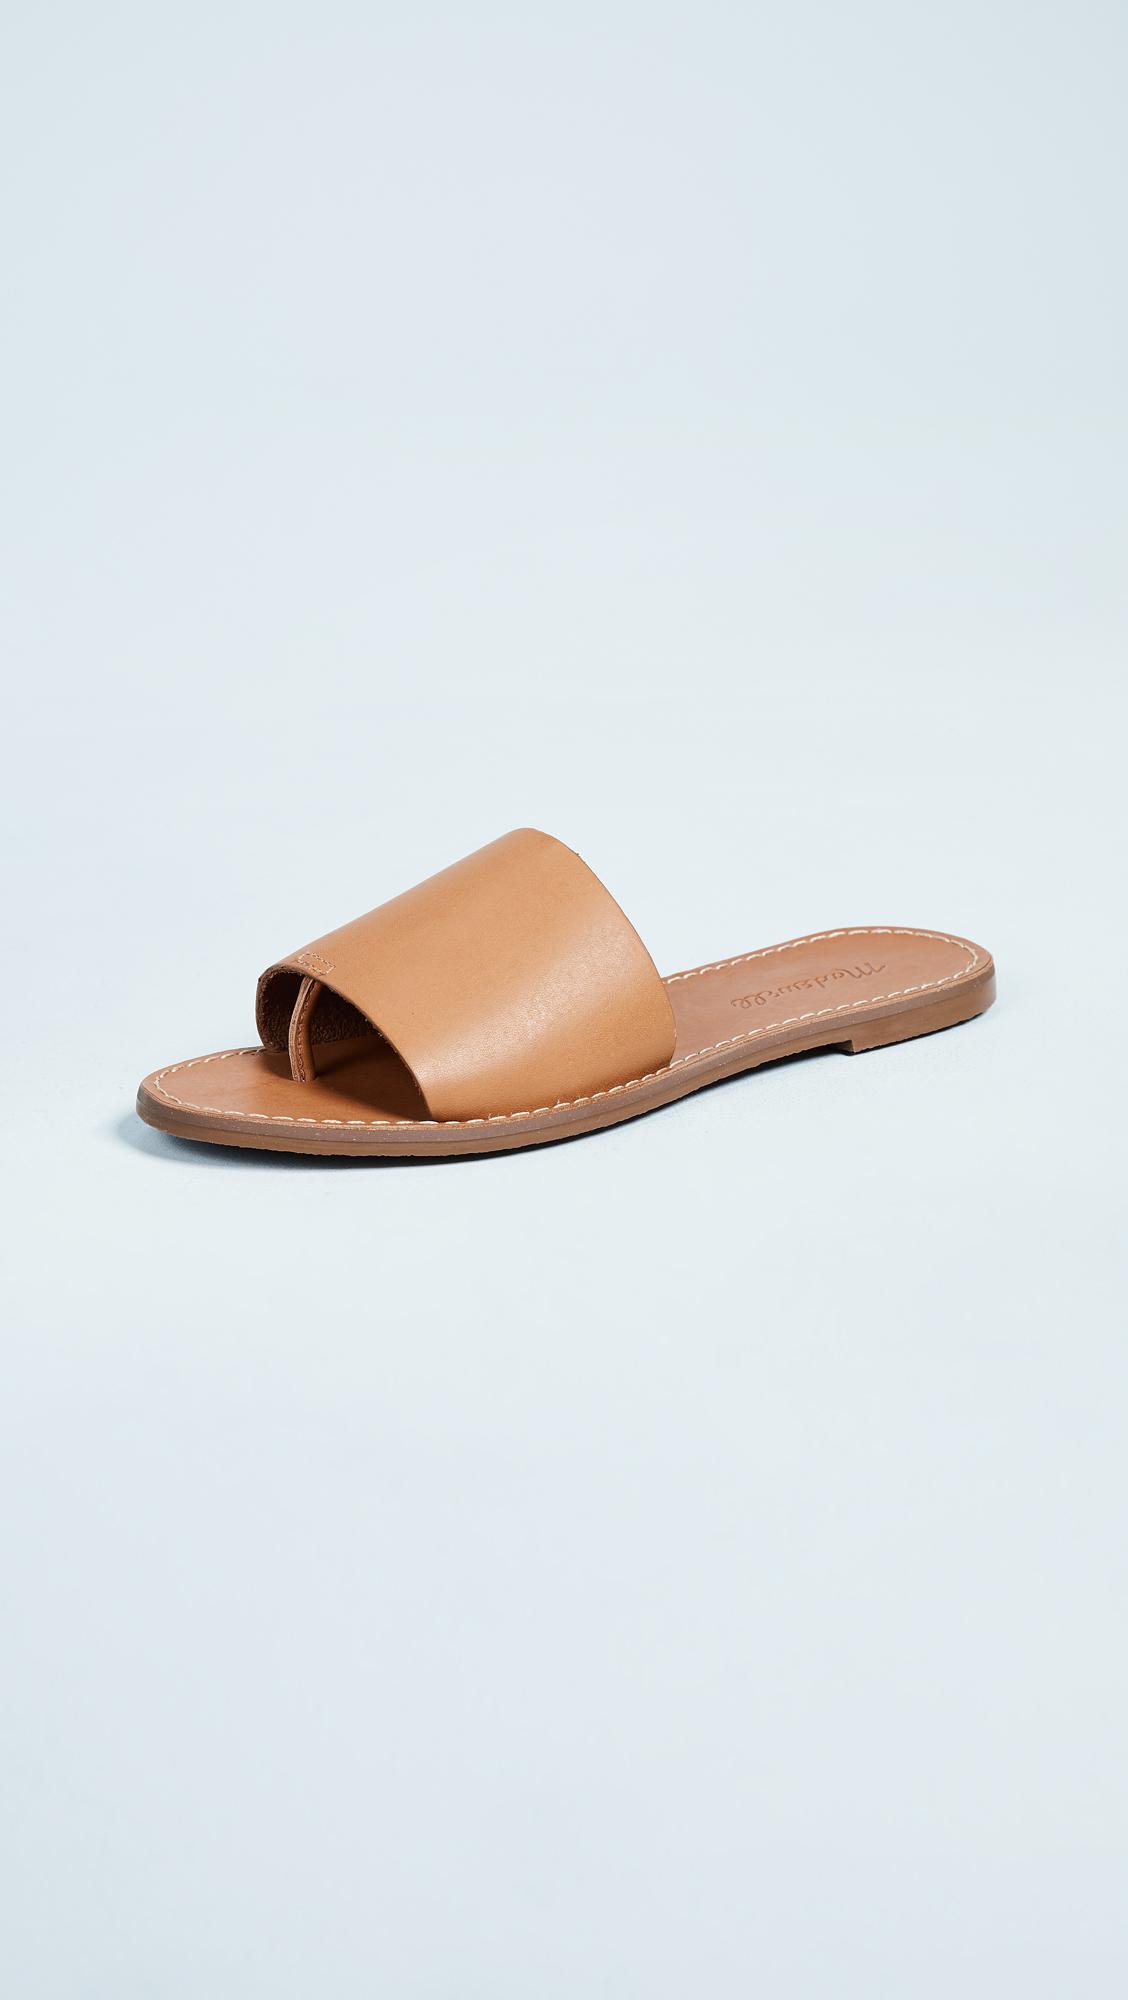 Madewell Leather The Boardwalk Post Slide Sandals in Desert Camel ...